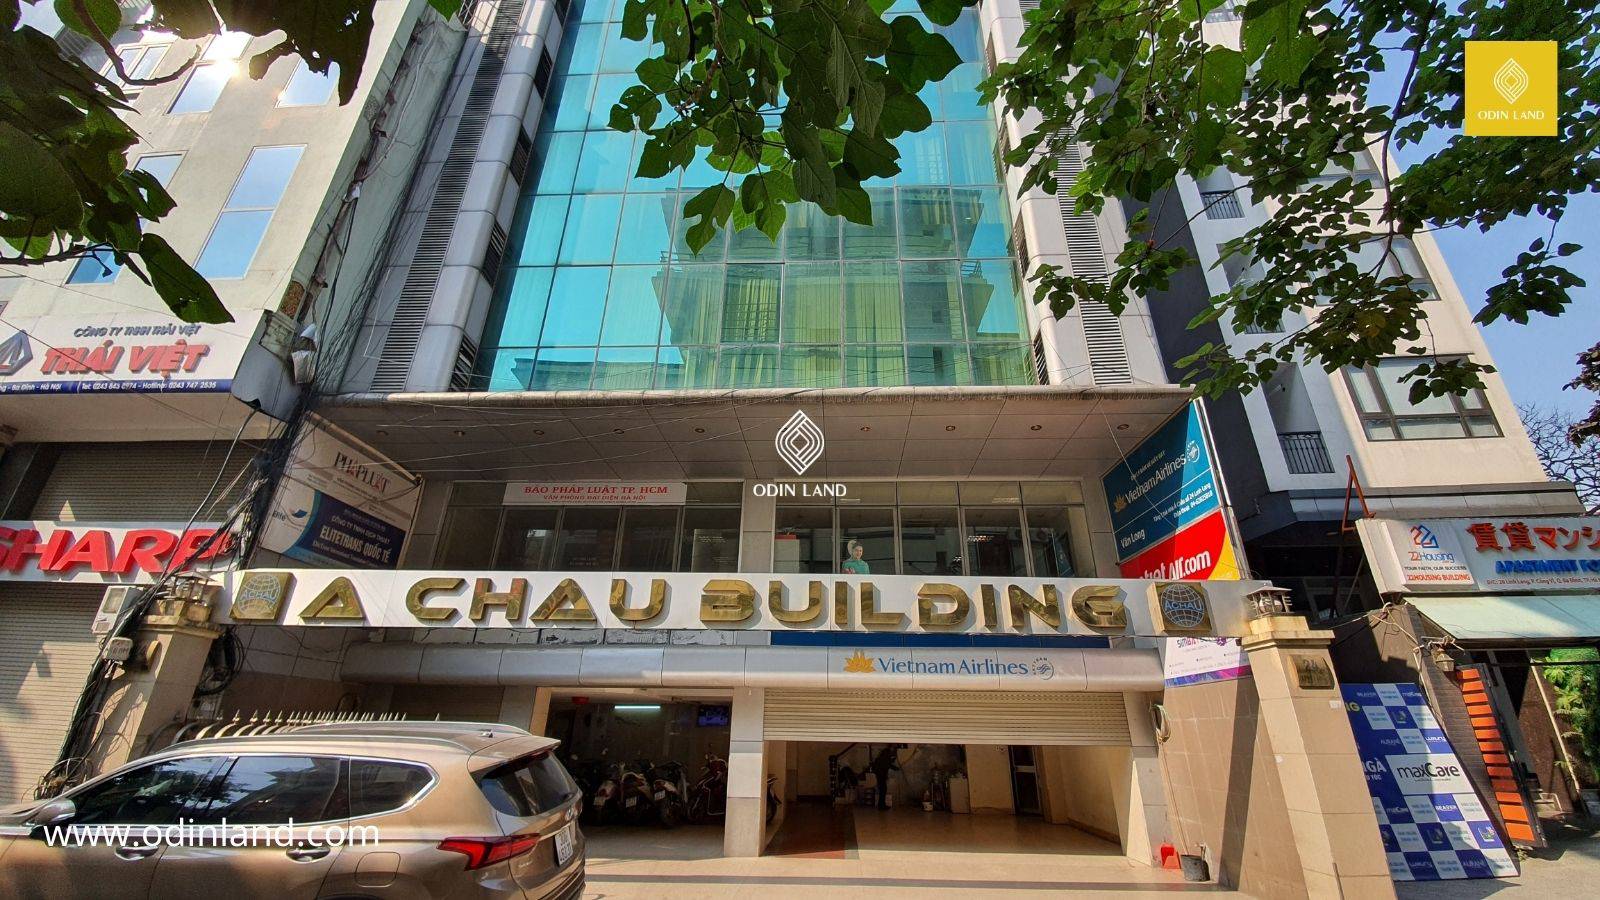 Van Phong Cho Thue Toa Nha A Chau Building 4